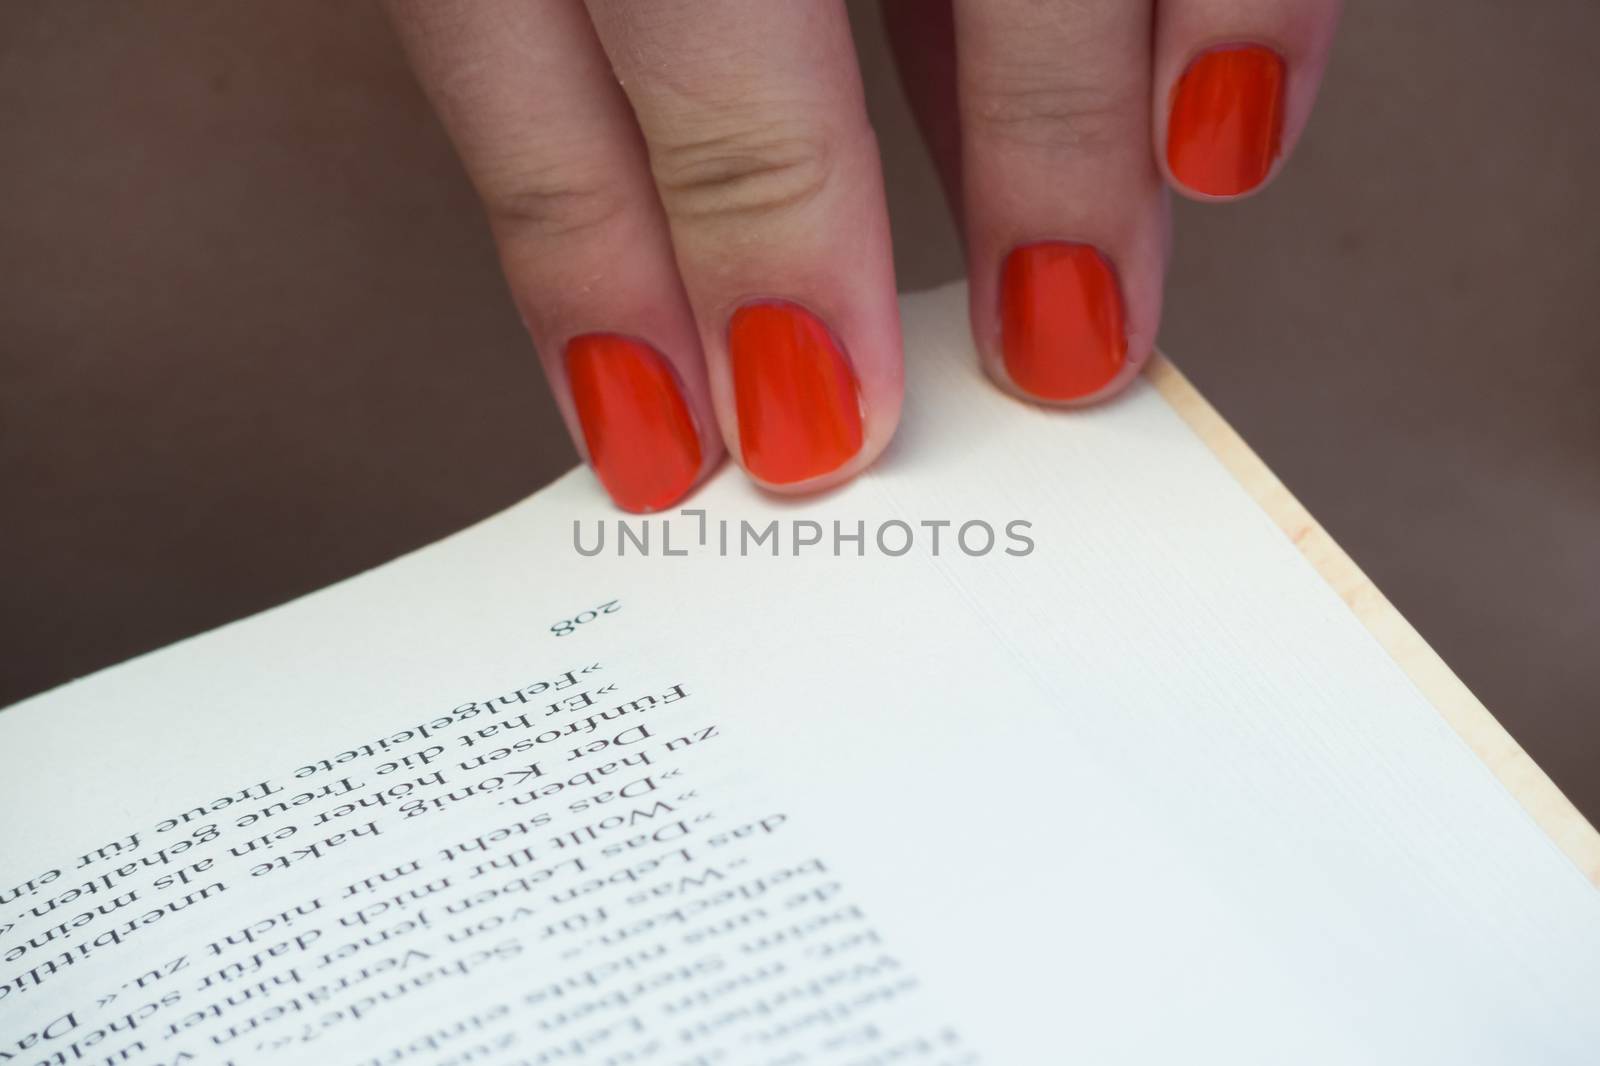 Changing page of book orange fingernails